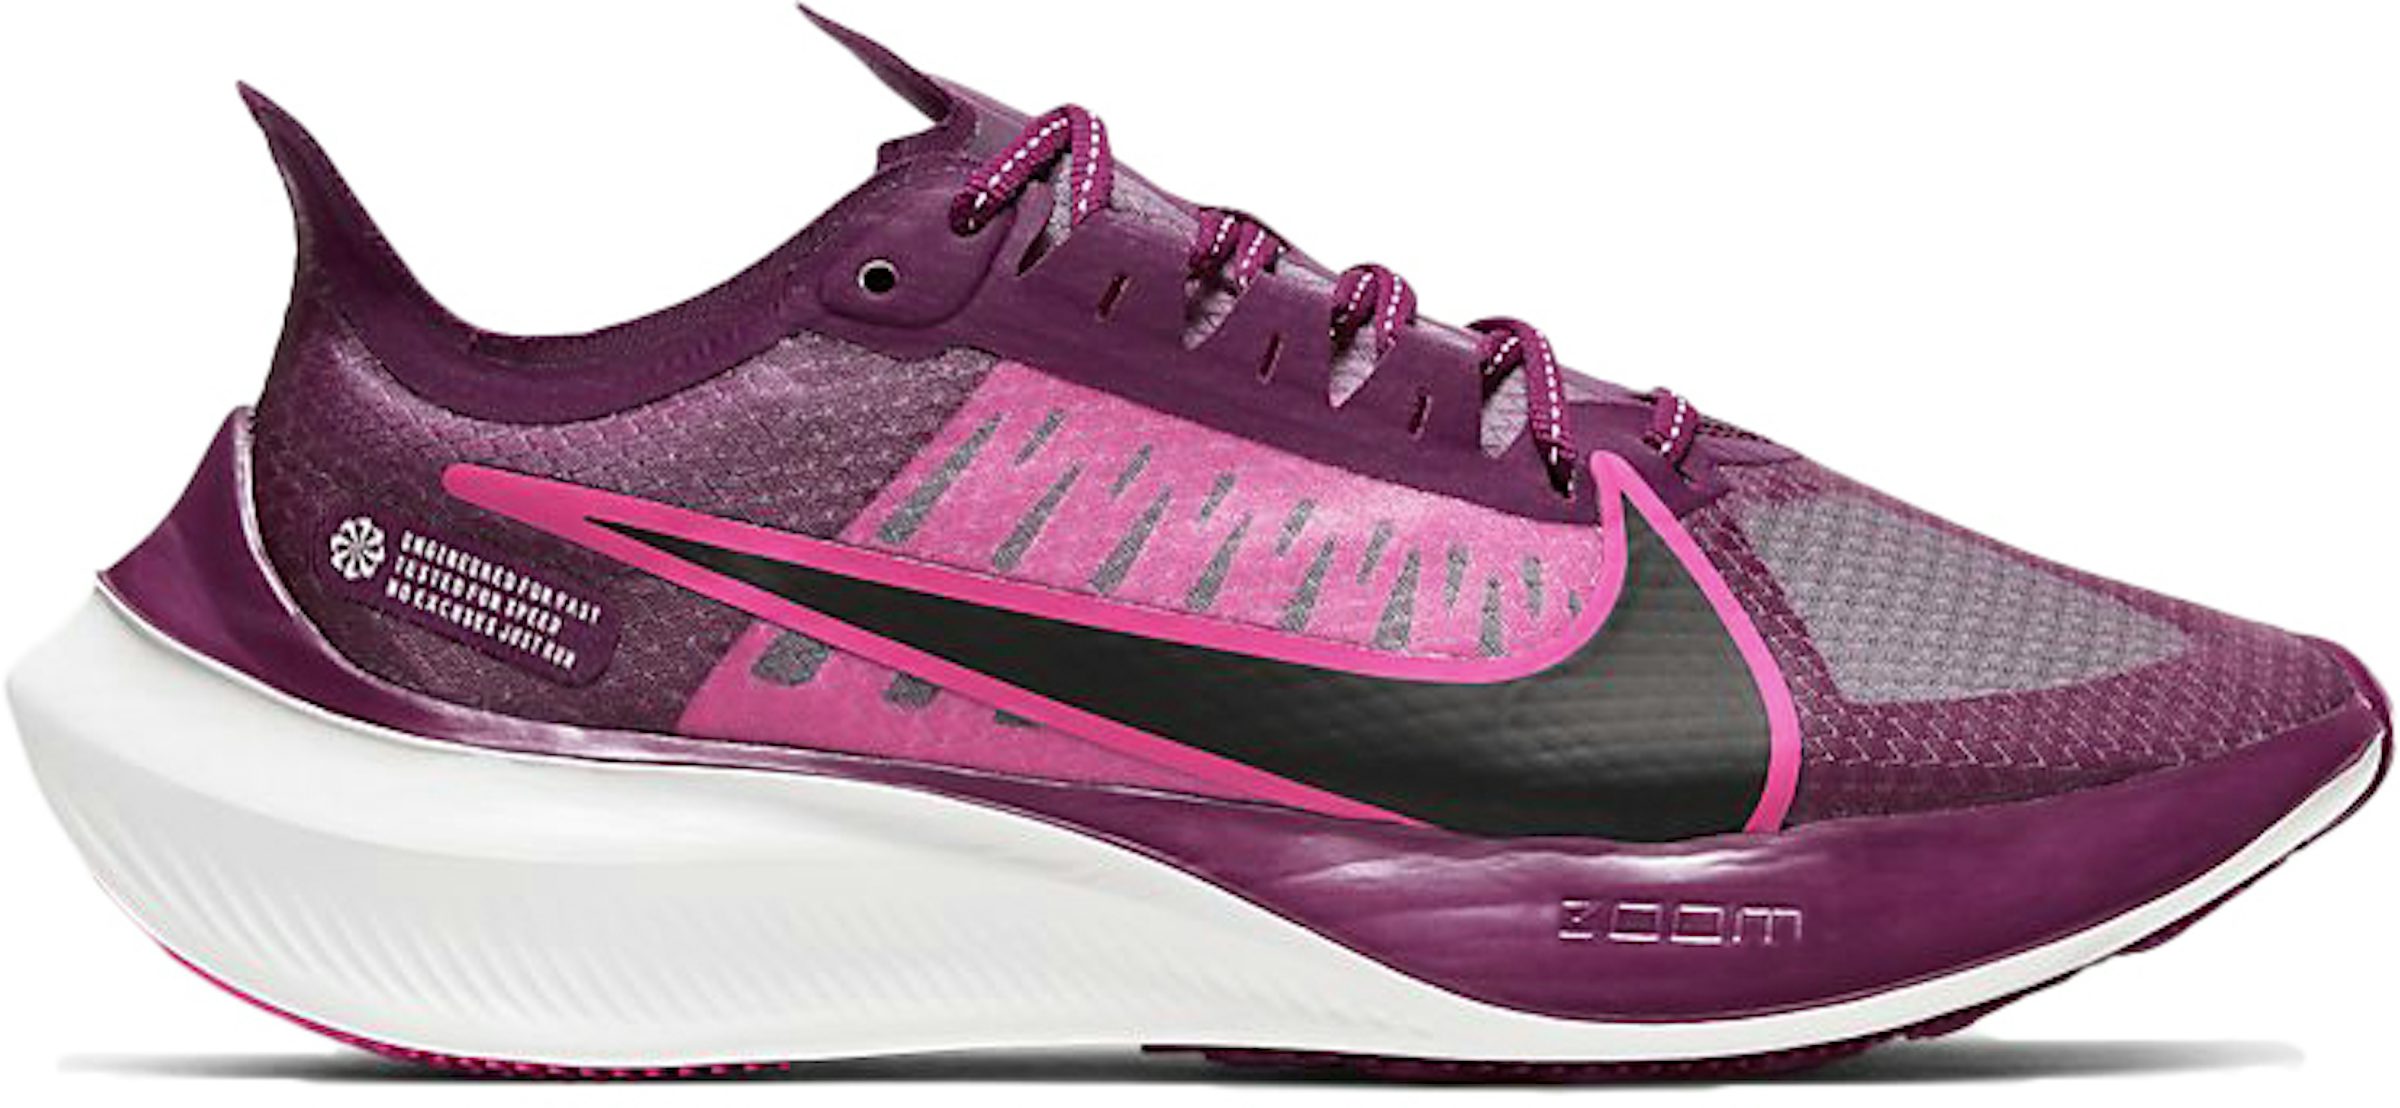 Beraadslagen kreupel Afdeling Nike Zoom Gravity True Berry (Women's) - BQ3203-601 - US